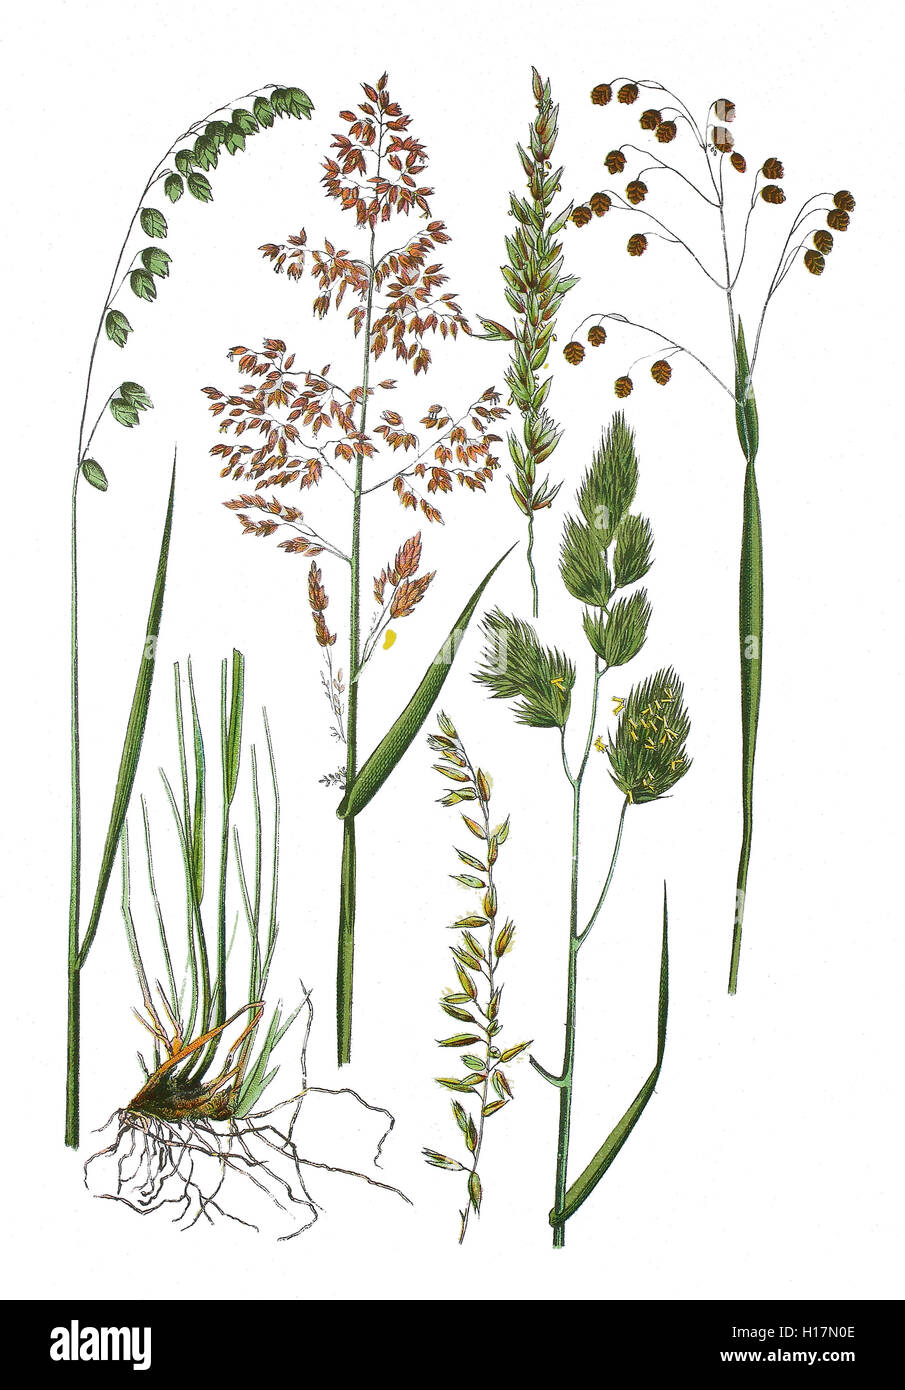 Nickendes Perlgras, Melica nutans (links), Wimper-Perlgras, Melica ciliata (unten 2. und 4. und oben 3. von links), Wolliges Honiggras, Holcus lanatus (oben 2. von links), Gewoehnliches Knaeuelgras, Dactylis glomerata (2. von rechts), Gewoehnliches Zittergras, Briza media (rechts) Stock Photo